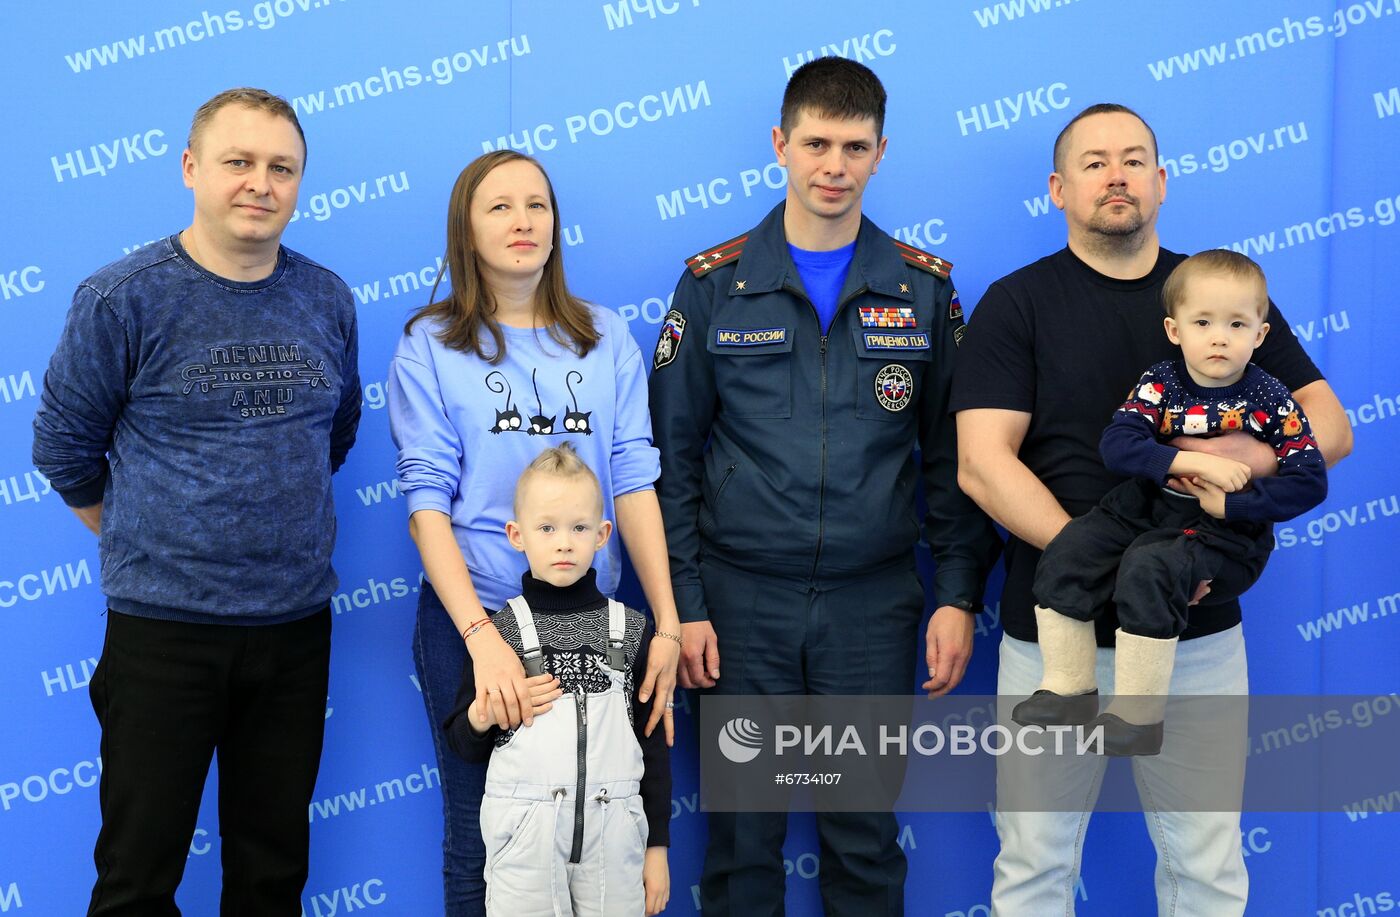 Мальчик И. Фокин встретился со спасателями МЧС России